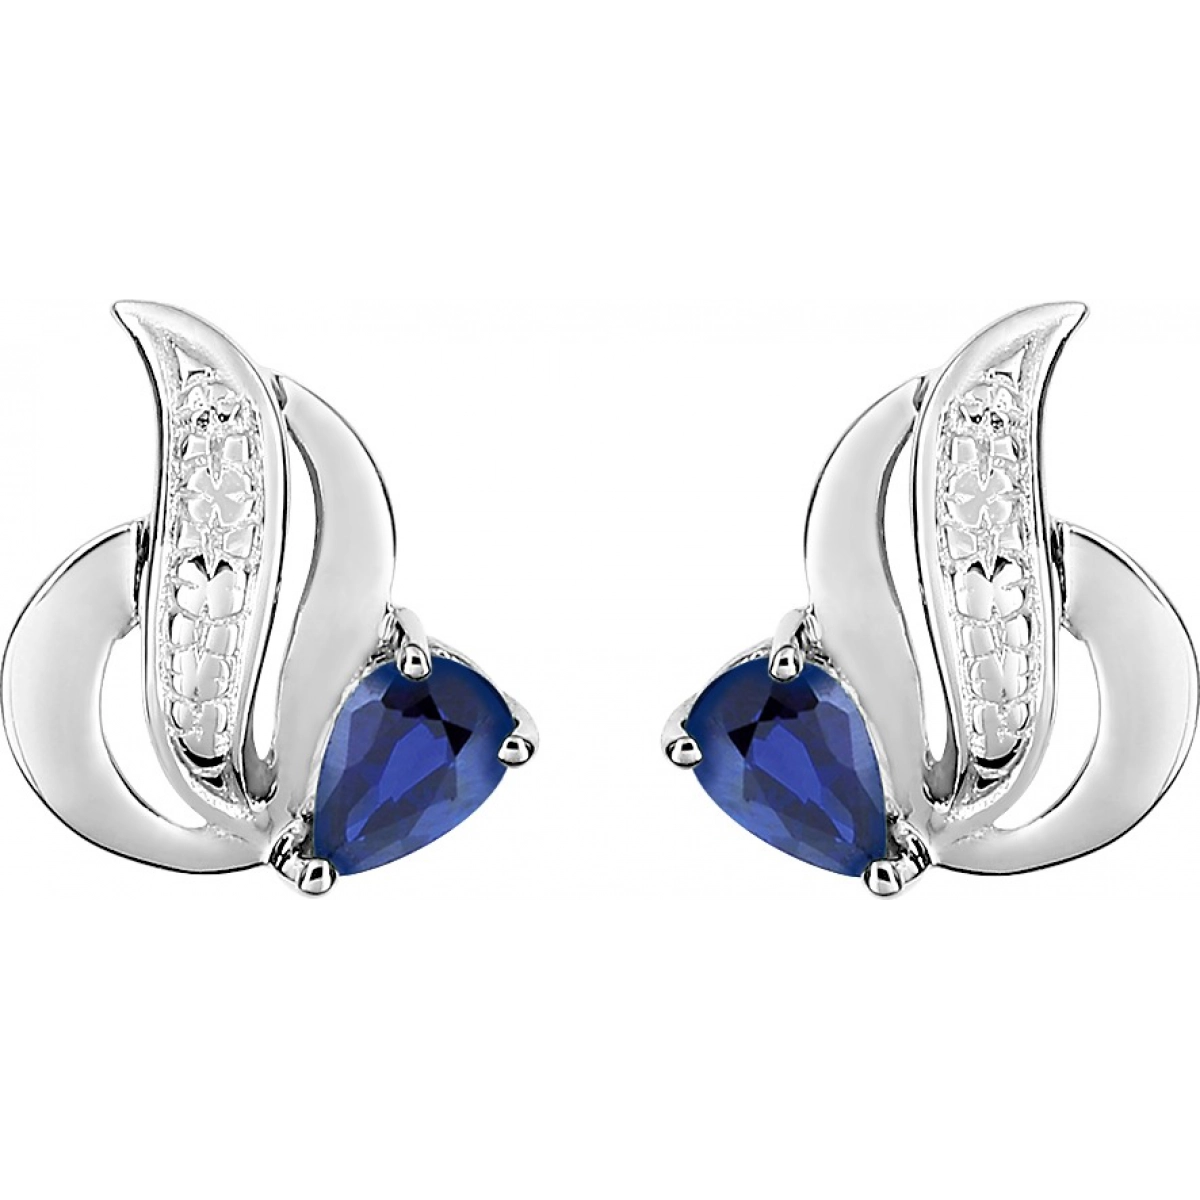 Earrings pair w. sapphire 18K WG  Lua Blanca  GG229GS.0